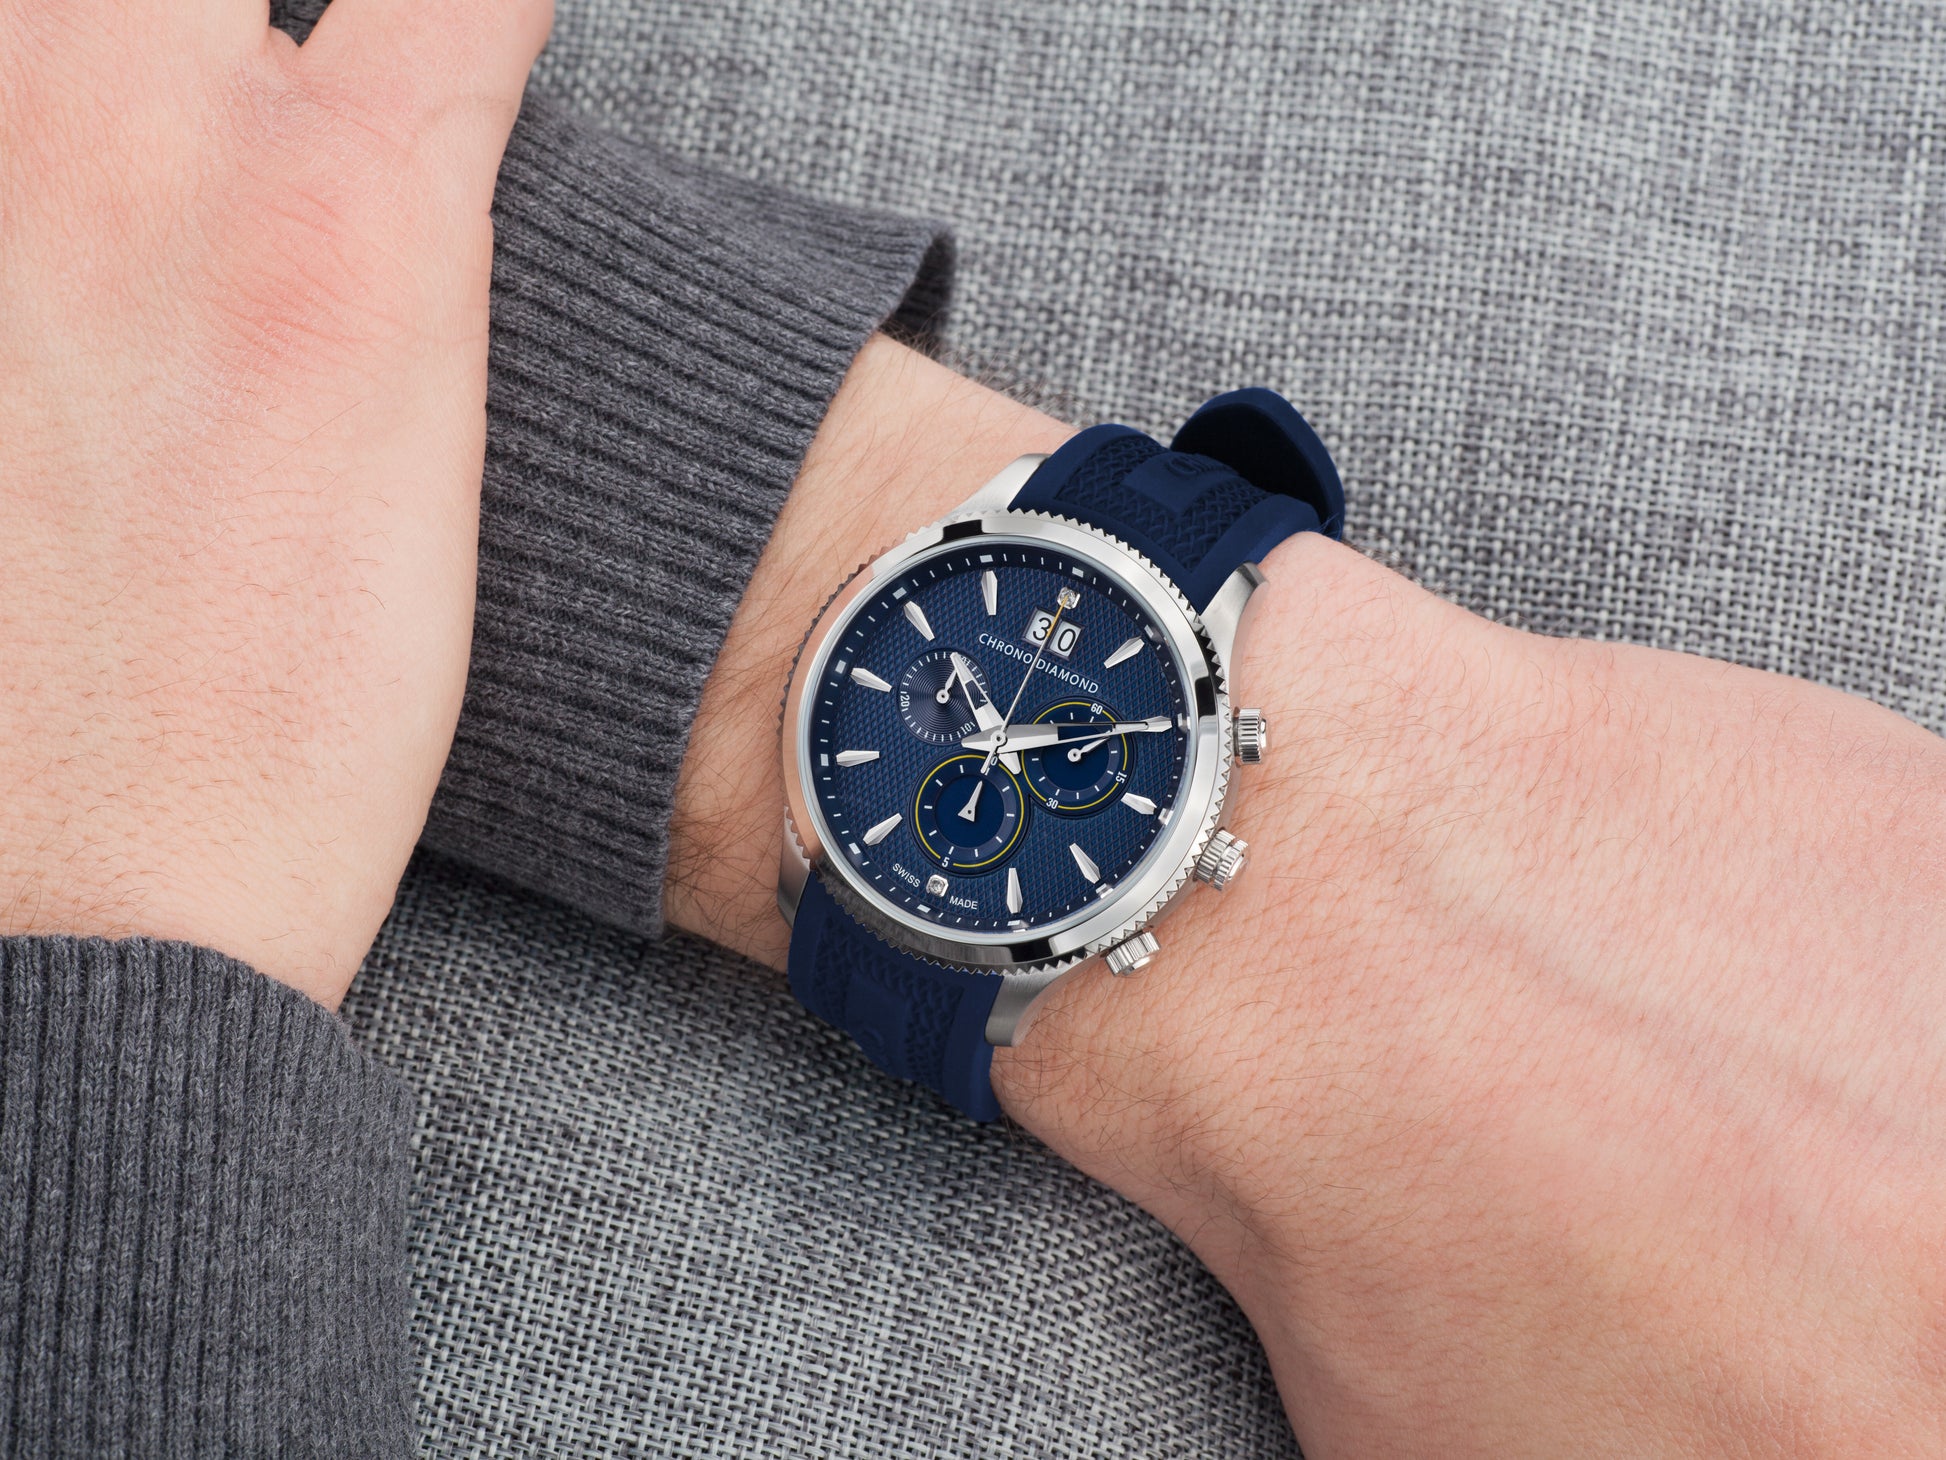 Automatic watches — Okeanos — Chrono Diamond — steel blue